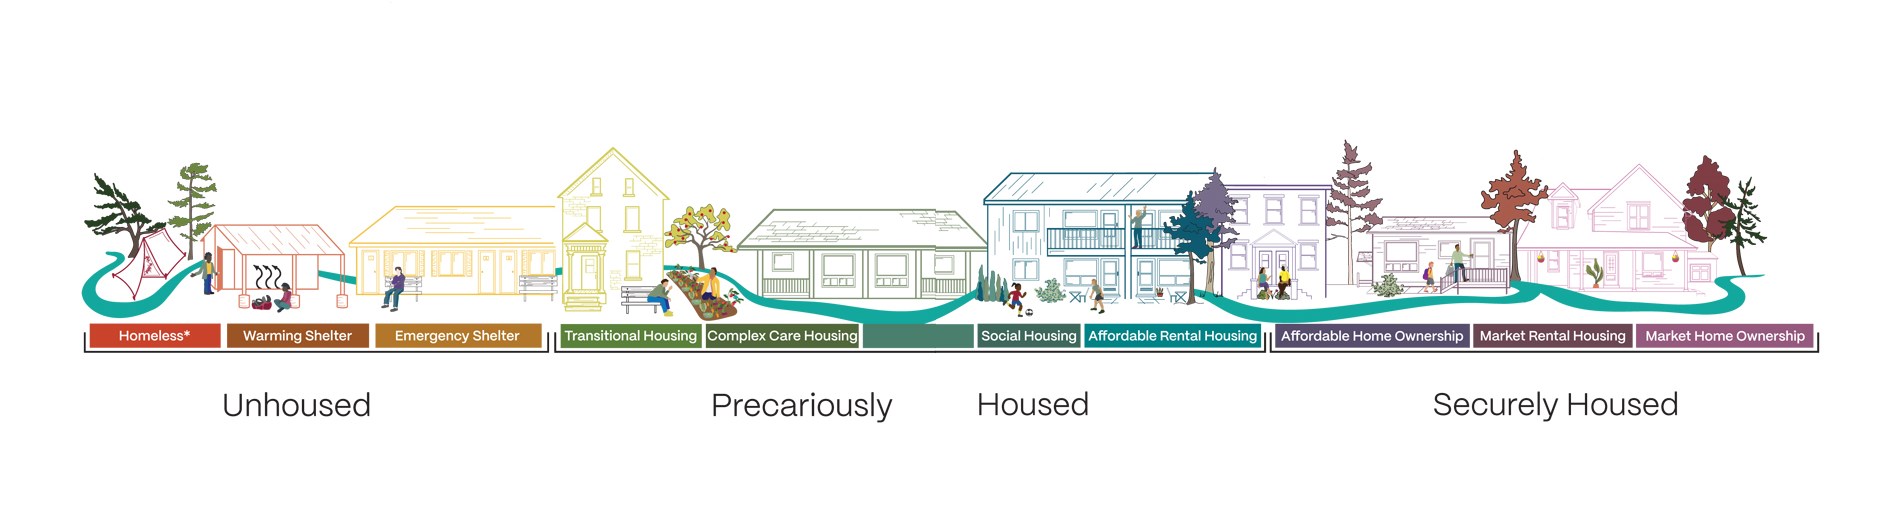 housing continuum graphic